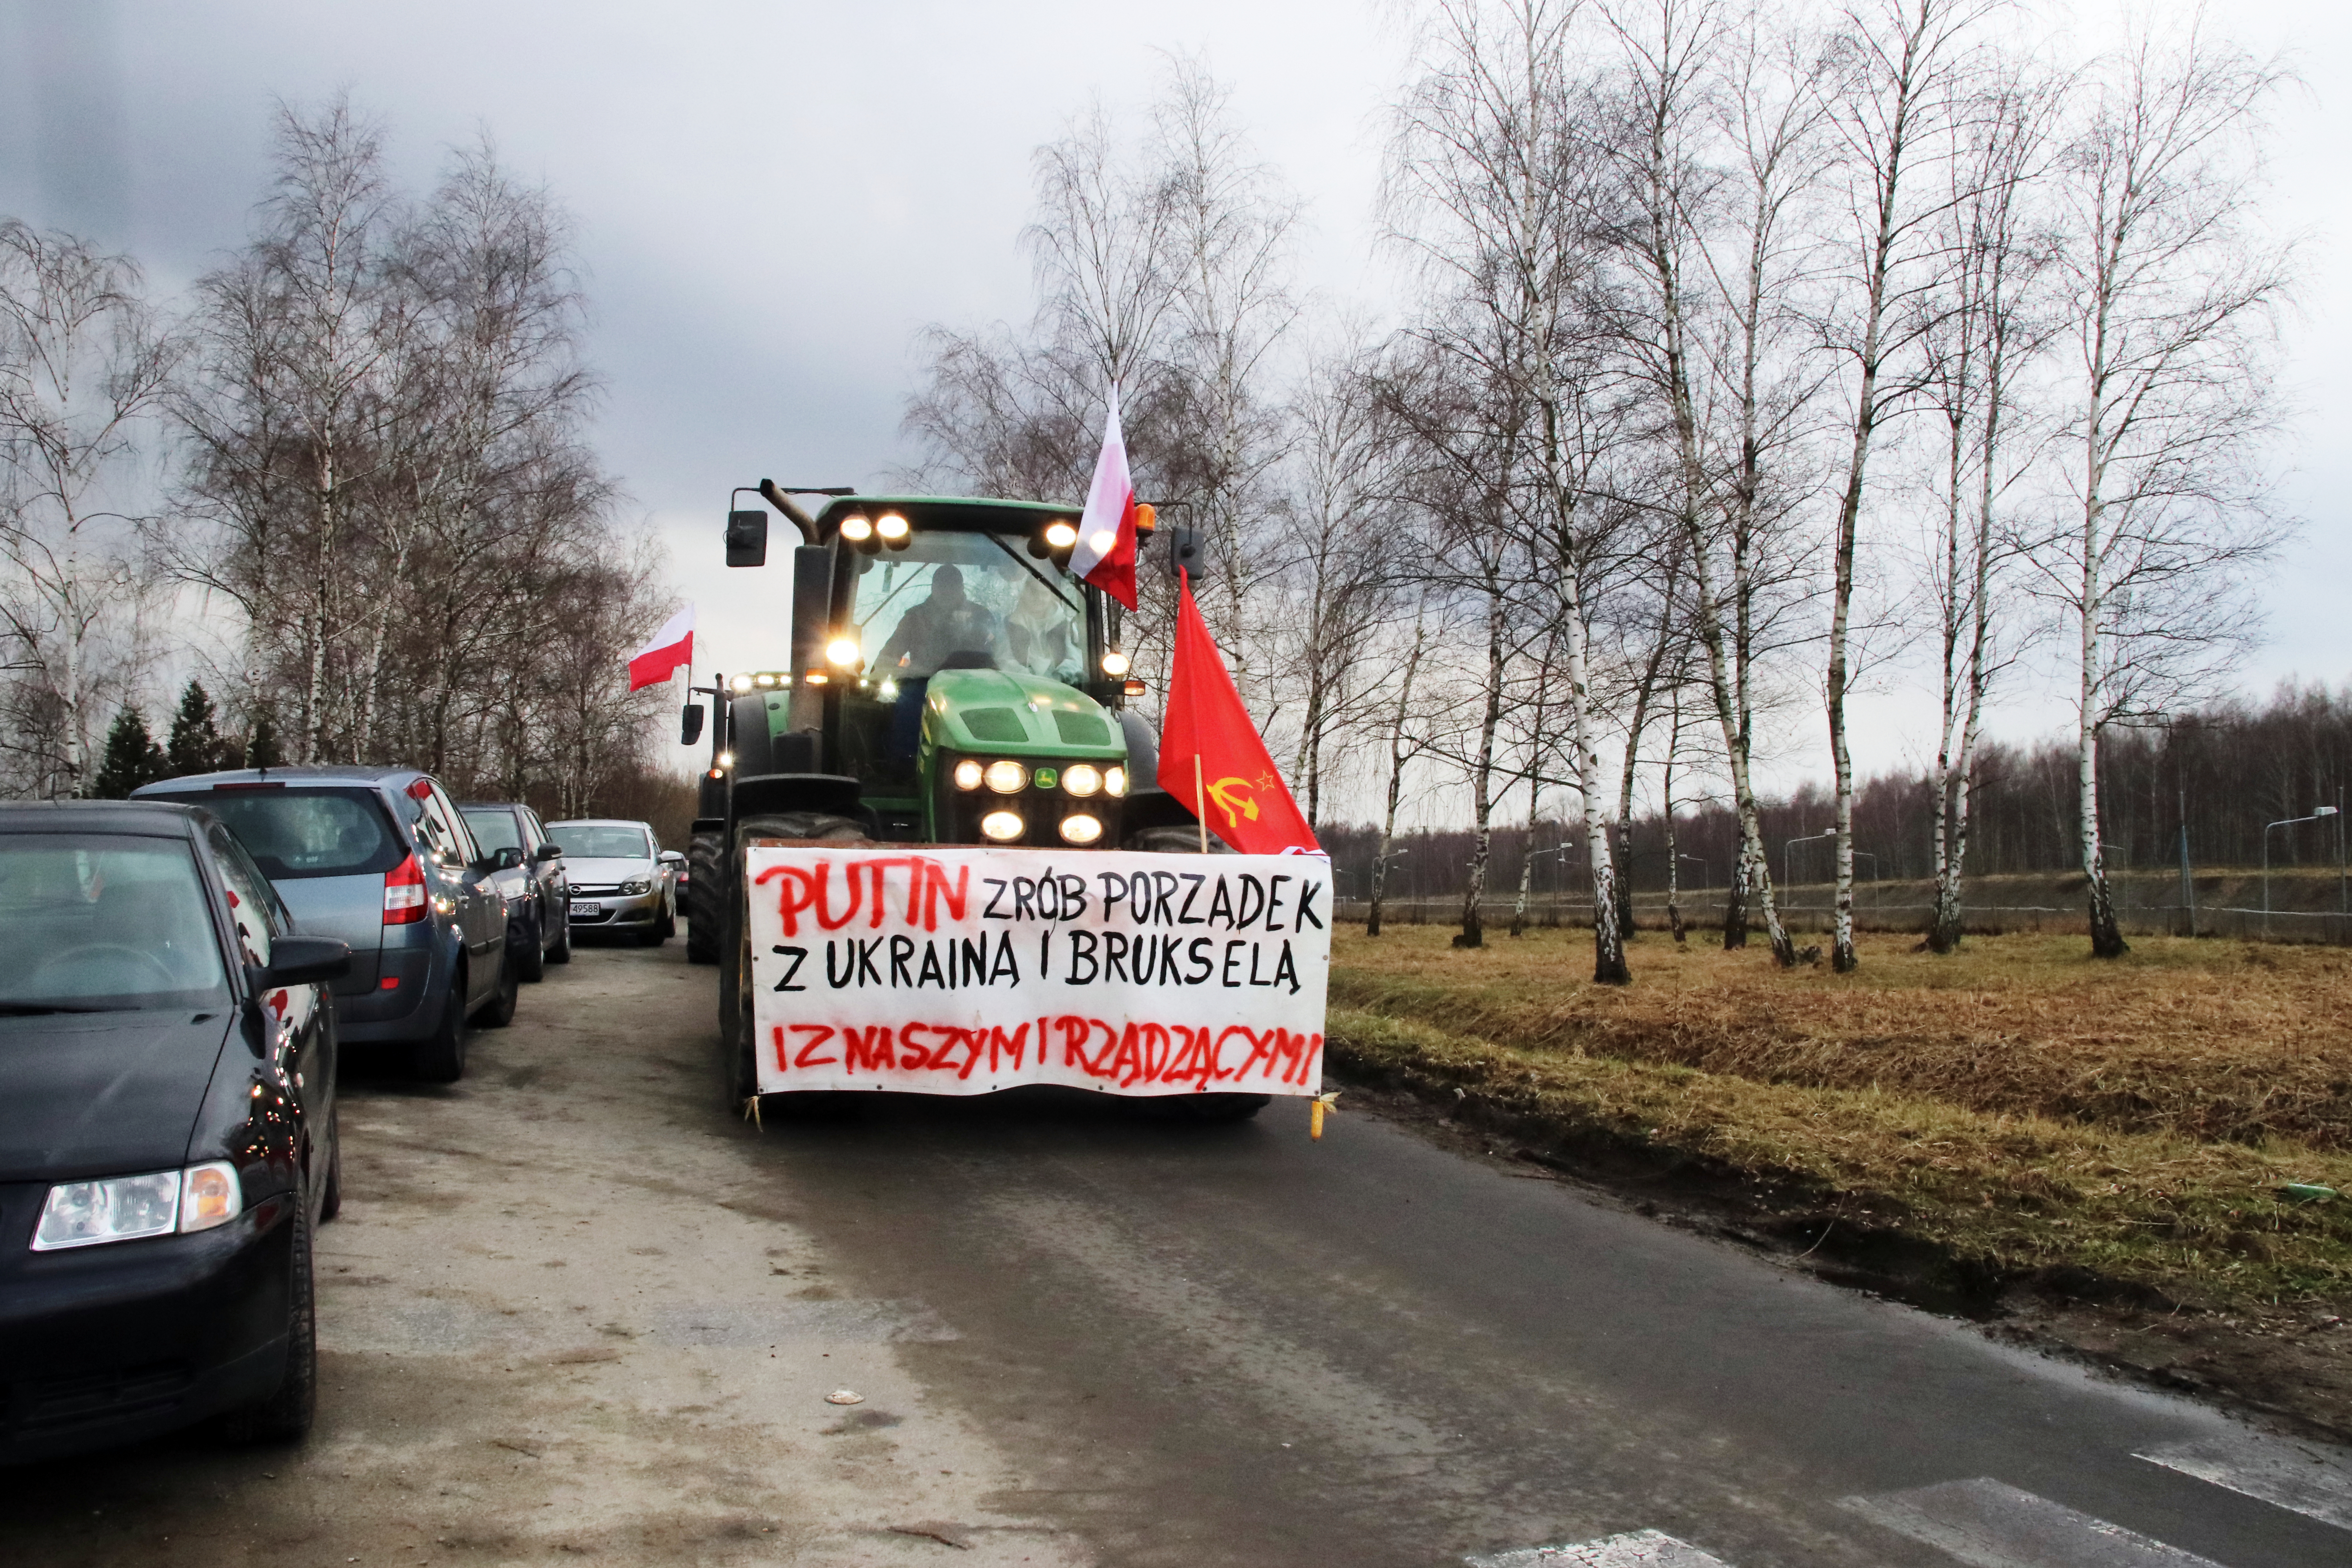 Zachowanie tego protestującego wzbudziło kontrowersje w całej Polsce (fot. Dawid Machecki)